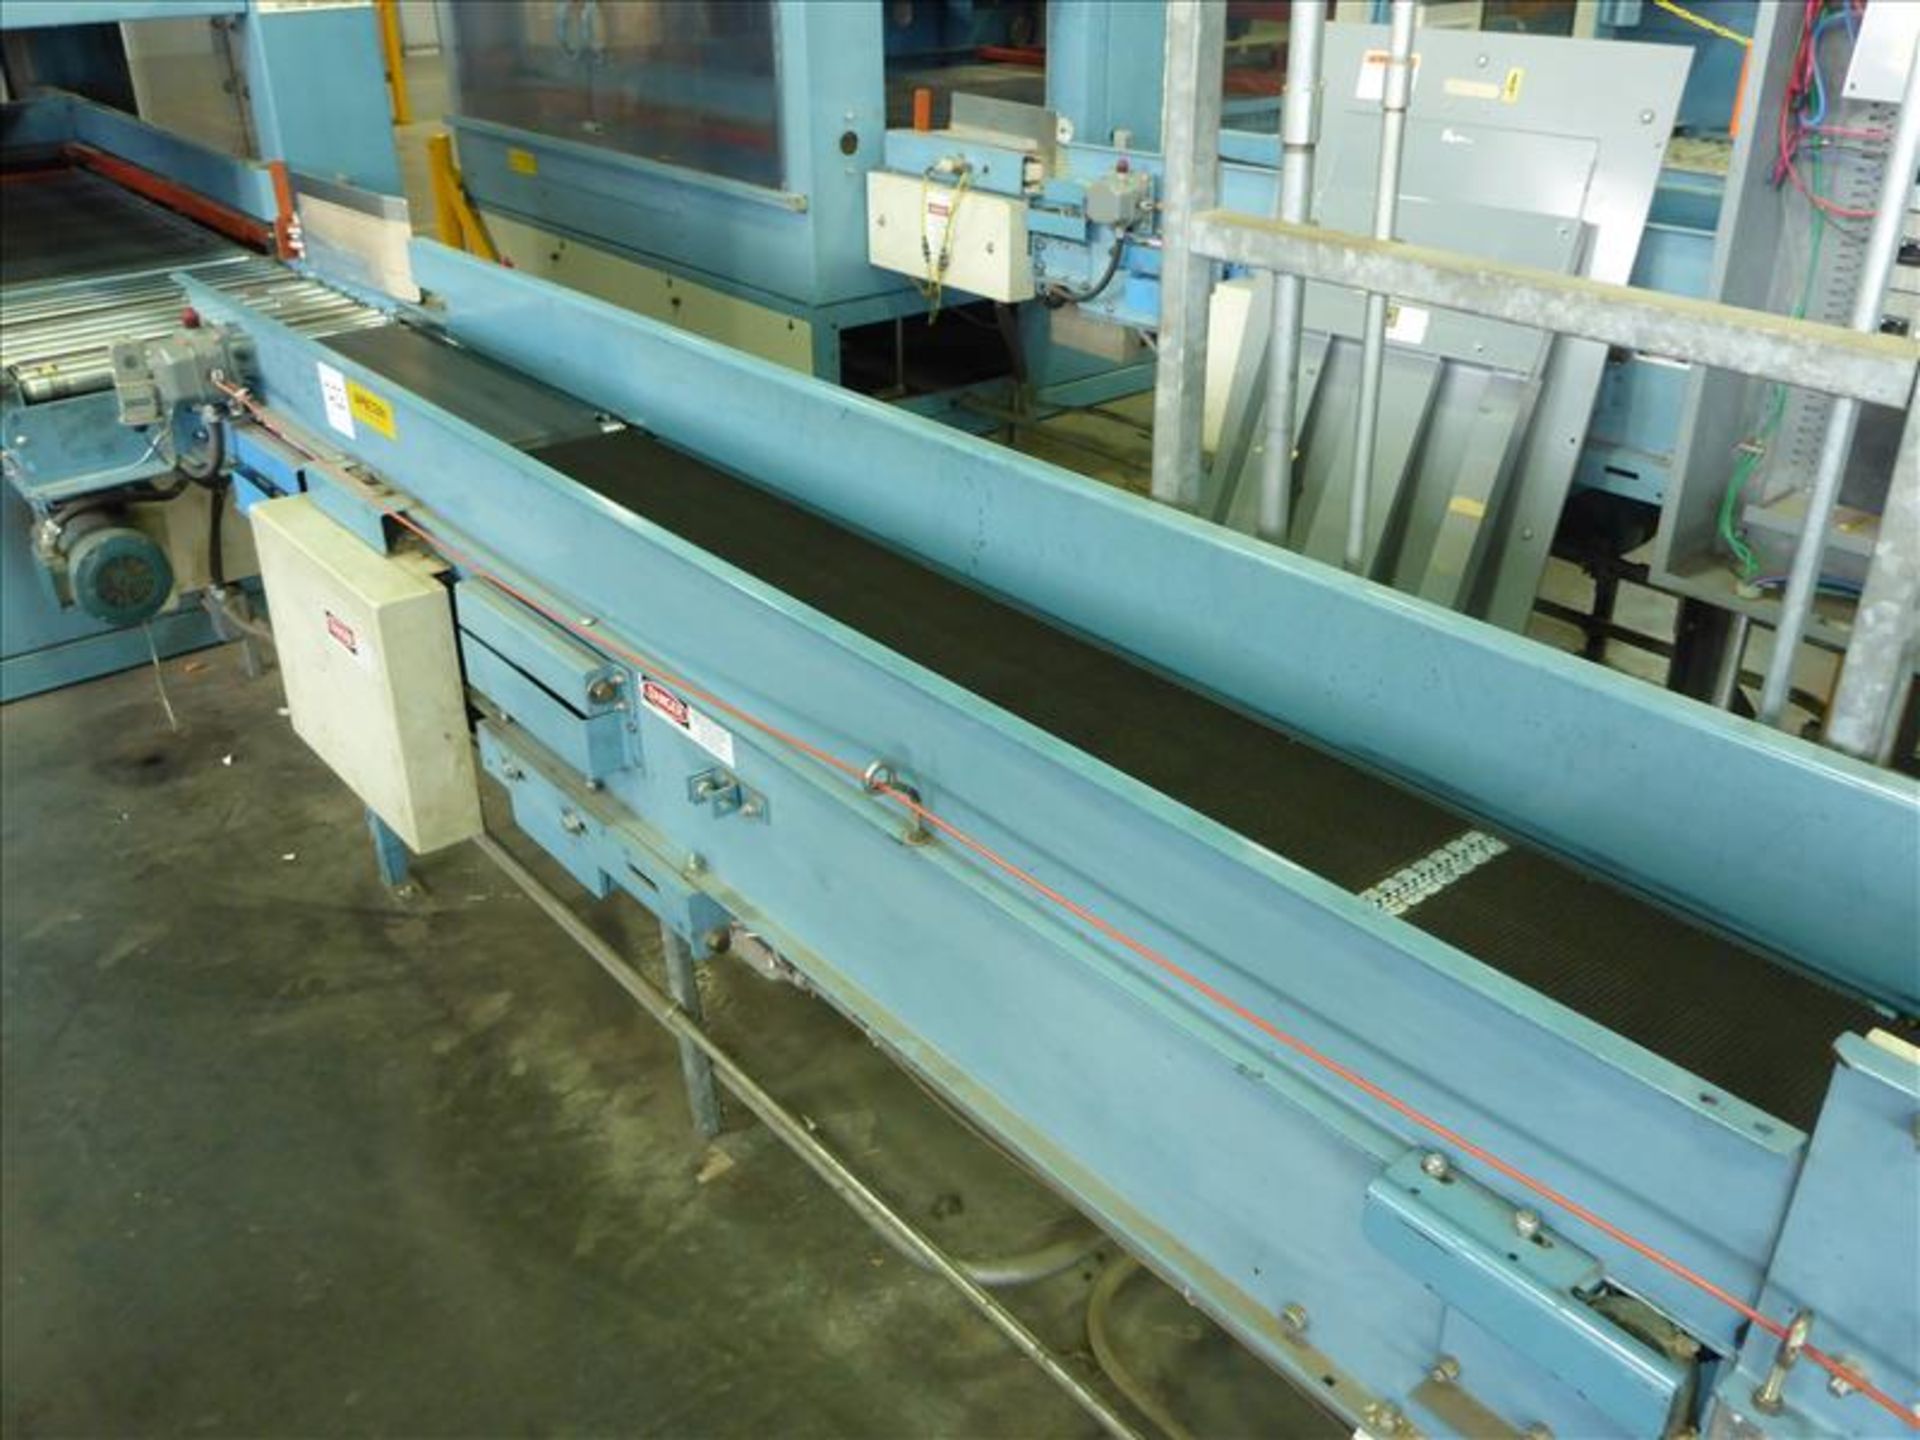 Alvey belt conveyor, approx. 15 in. x 120 in., 1.5 hp